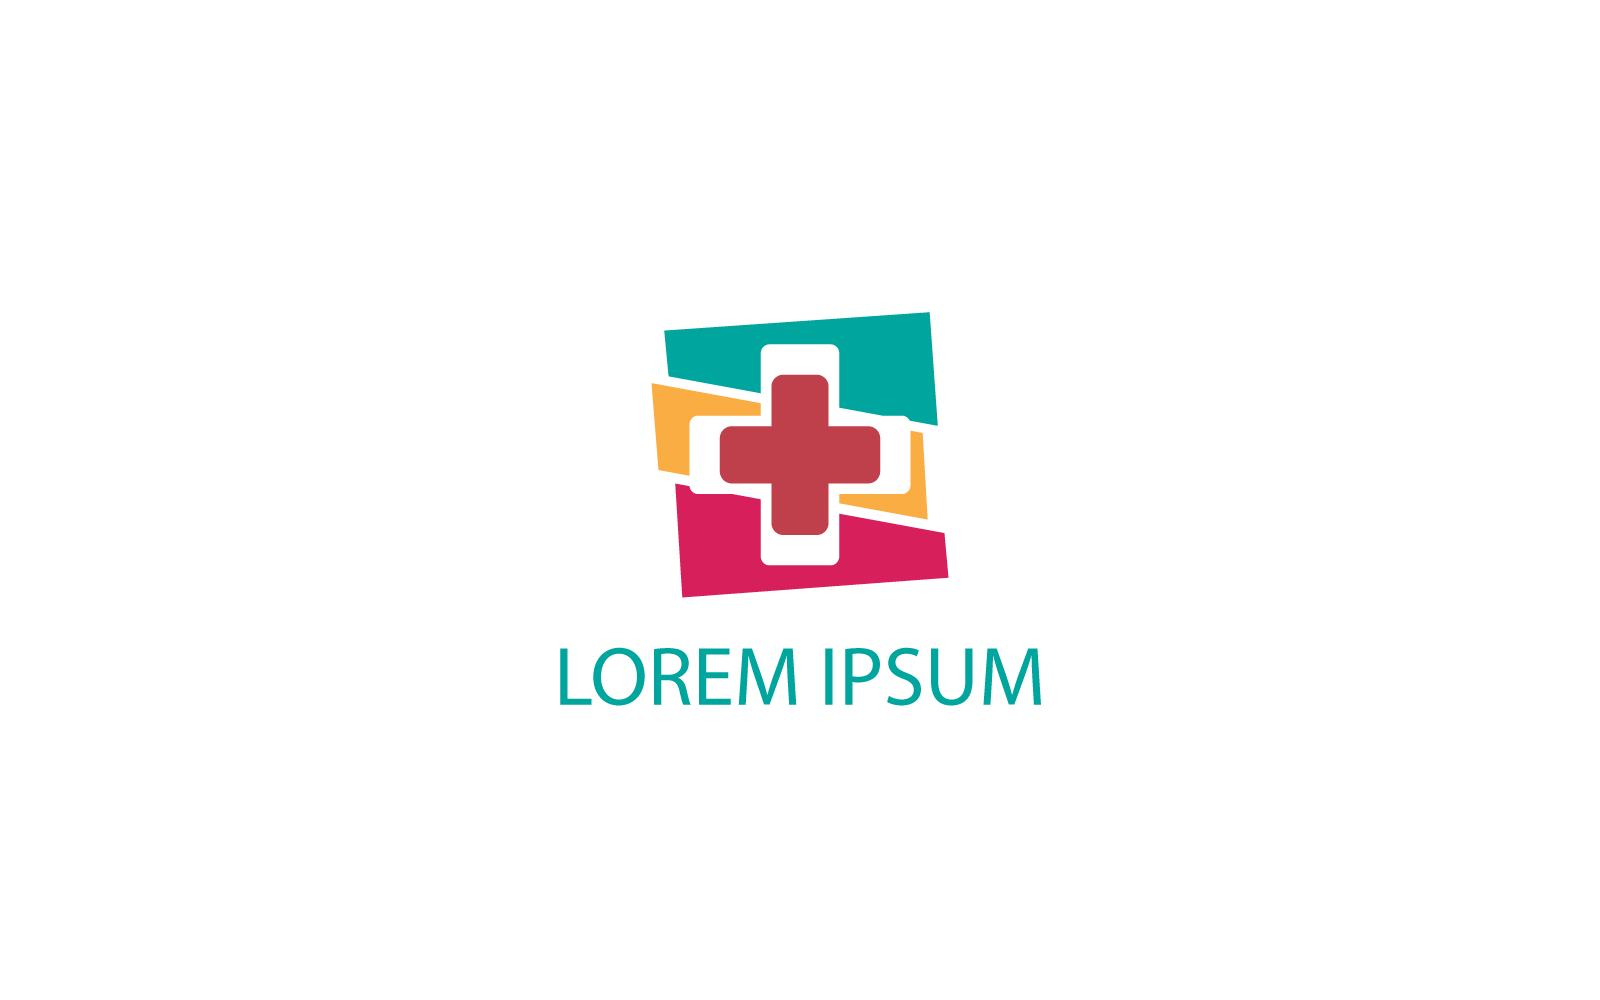 Création de logo de santé moderne et minimale